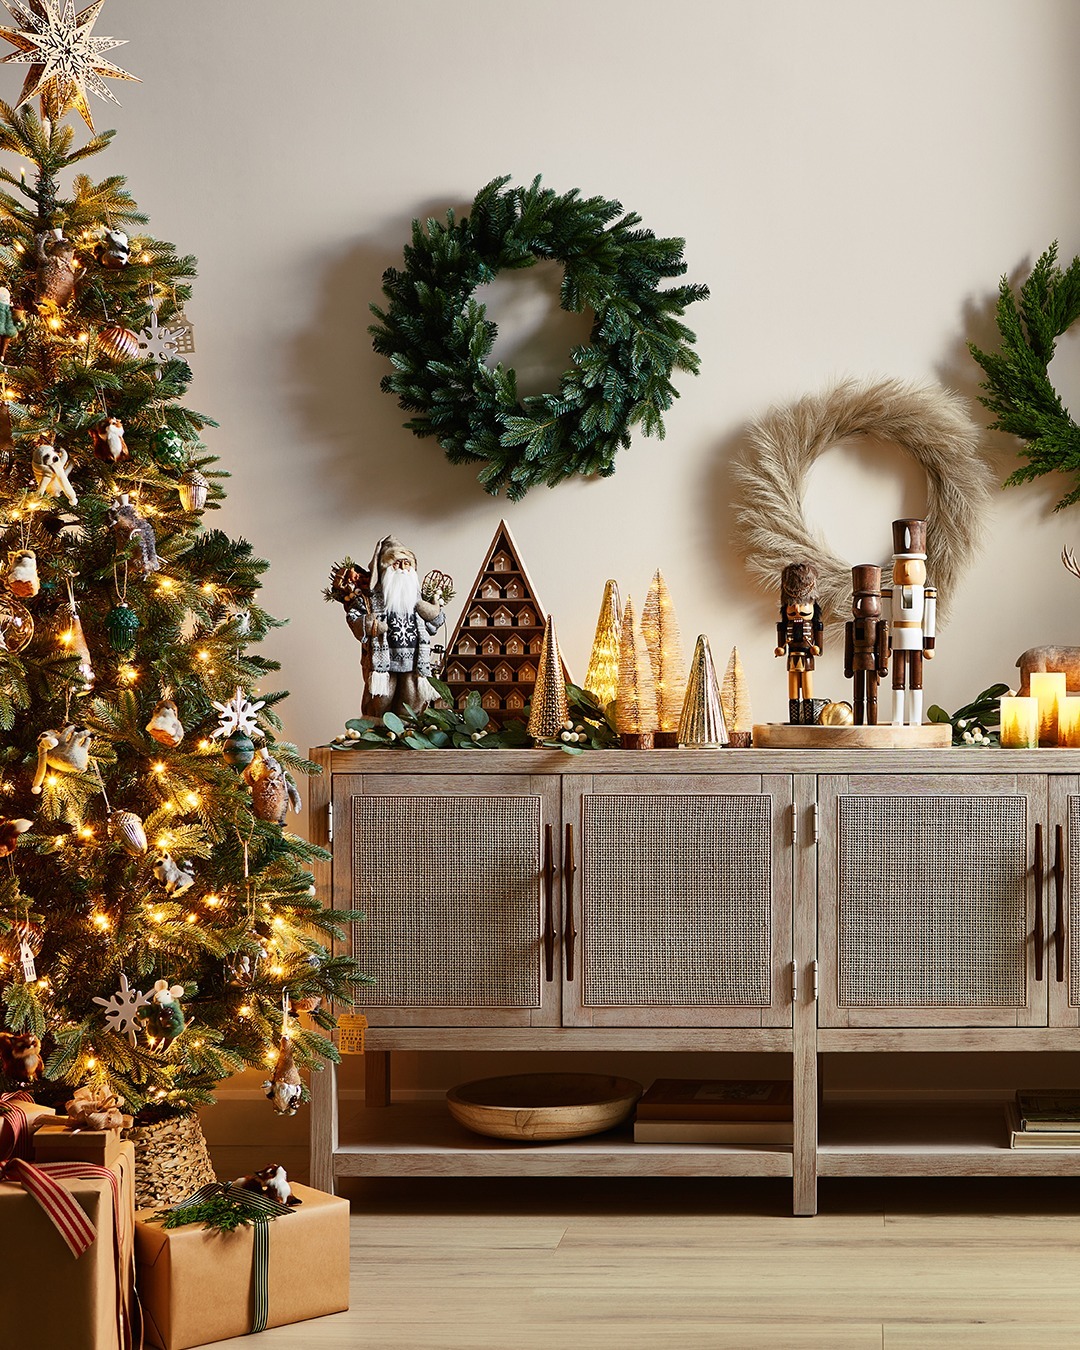 Christmas themed living room with Christmas tree and decor.